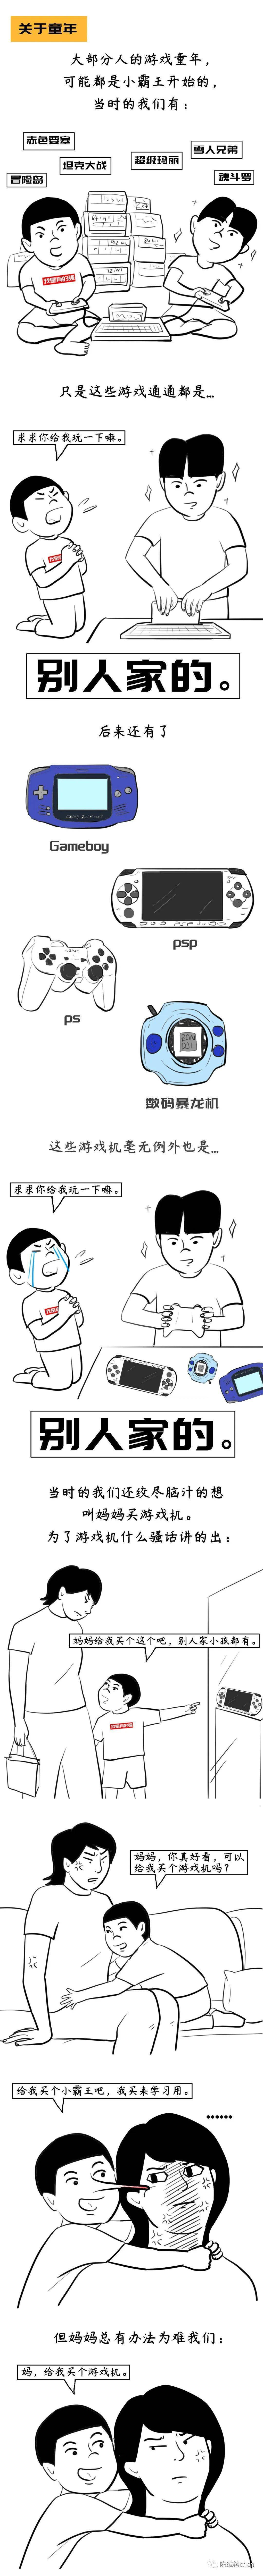 5188开元棋官方网站：深圳人玩游戏长大(图1)